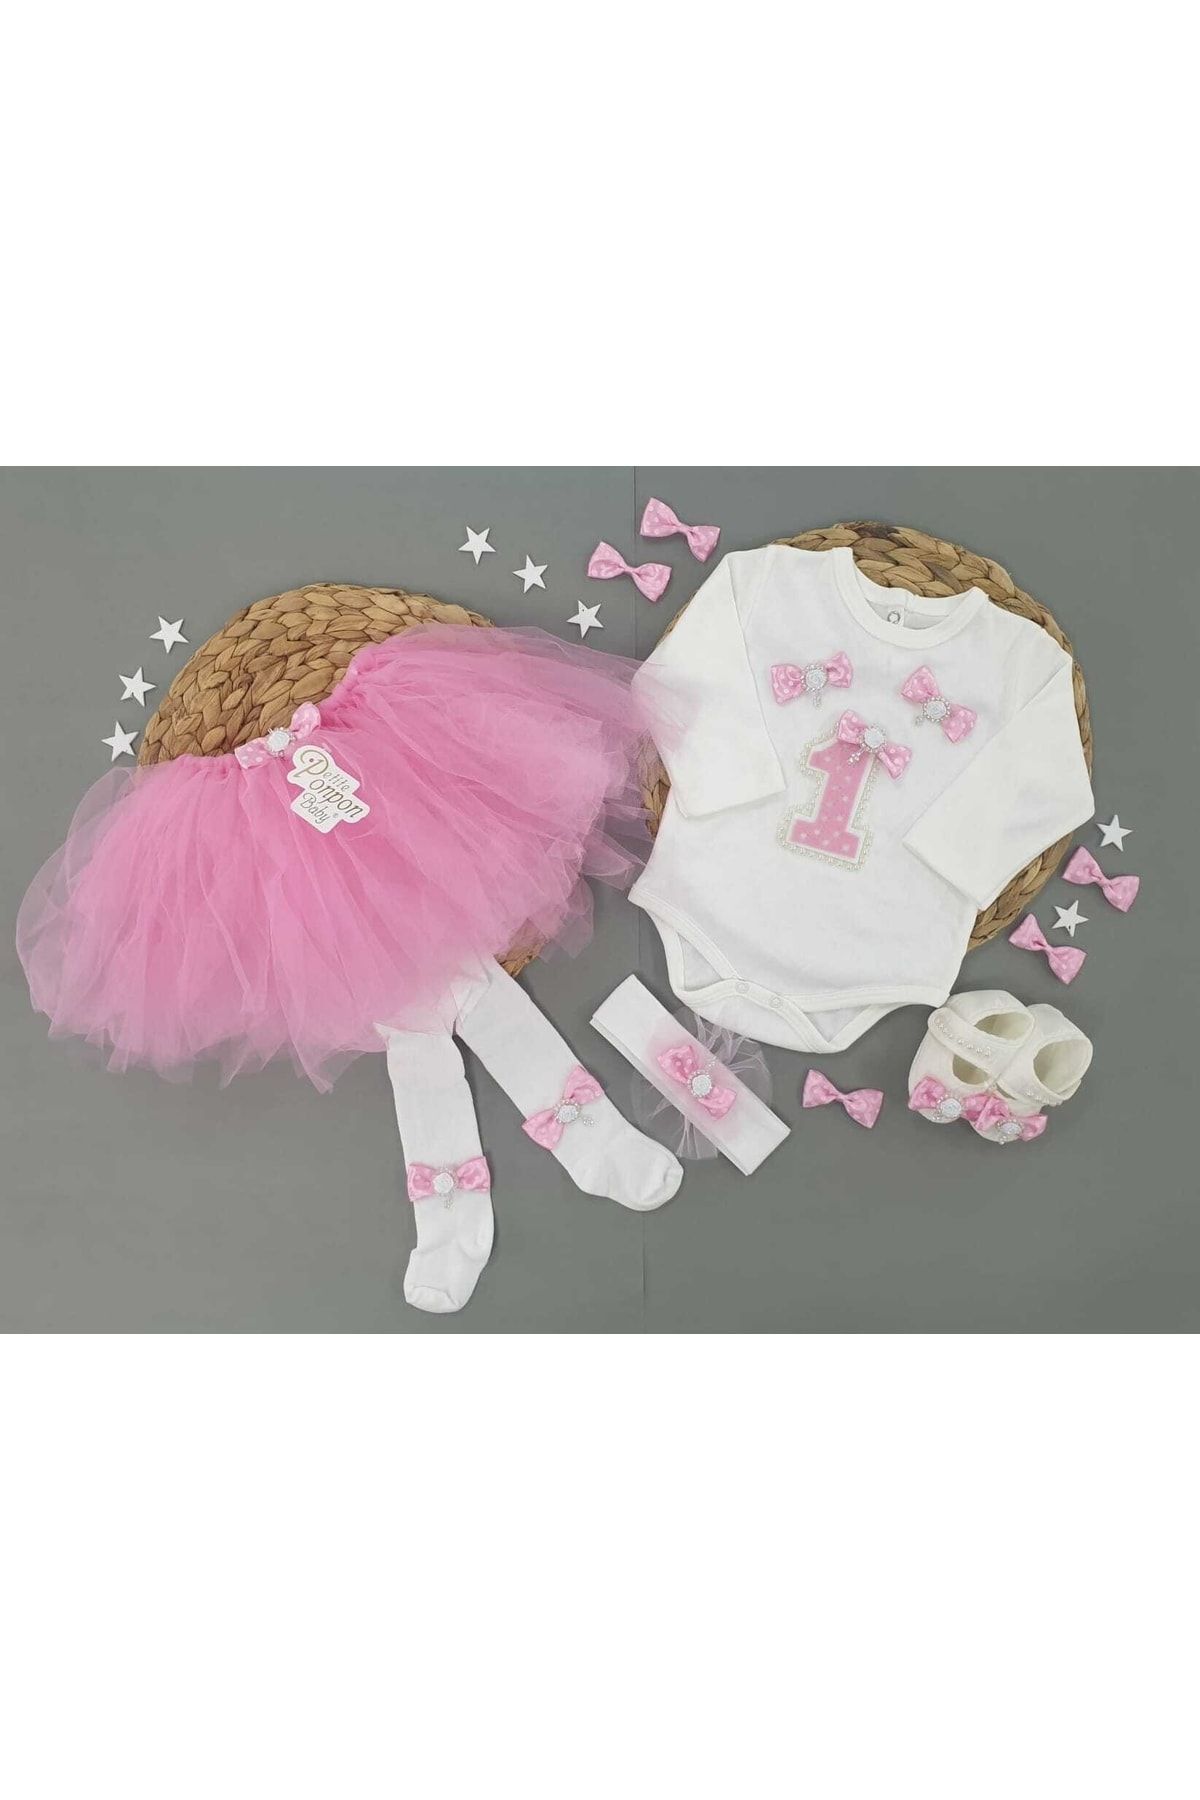 Petite Ponpon Baby Kız Bebek Doğum Günü Parti Kıyafeti Tütü Etek/elbise Set Keçe 1 Yaş